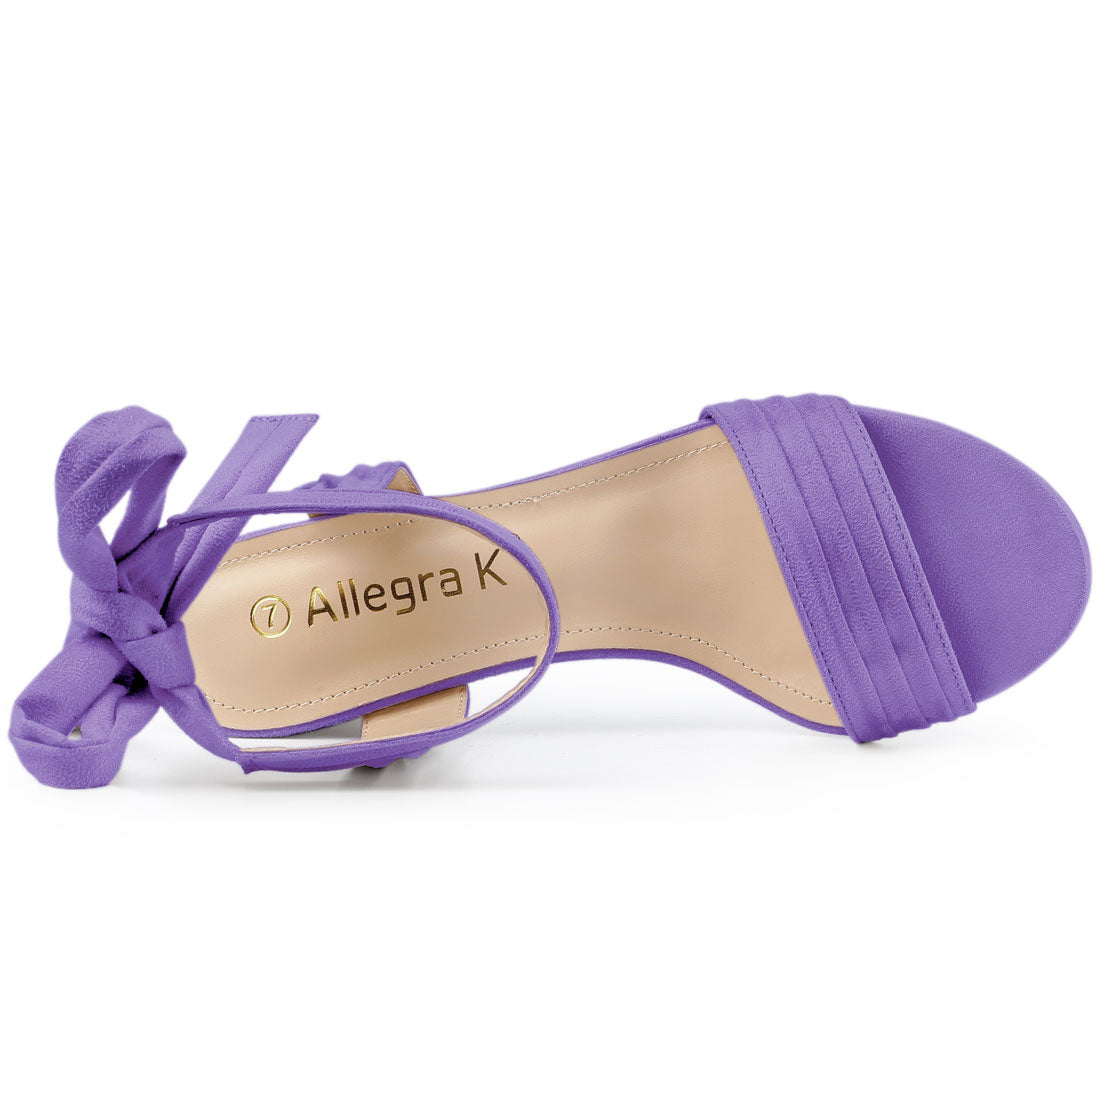 Allegra K Open Toe Ankle Tie Back Block Heel Sandals